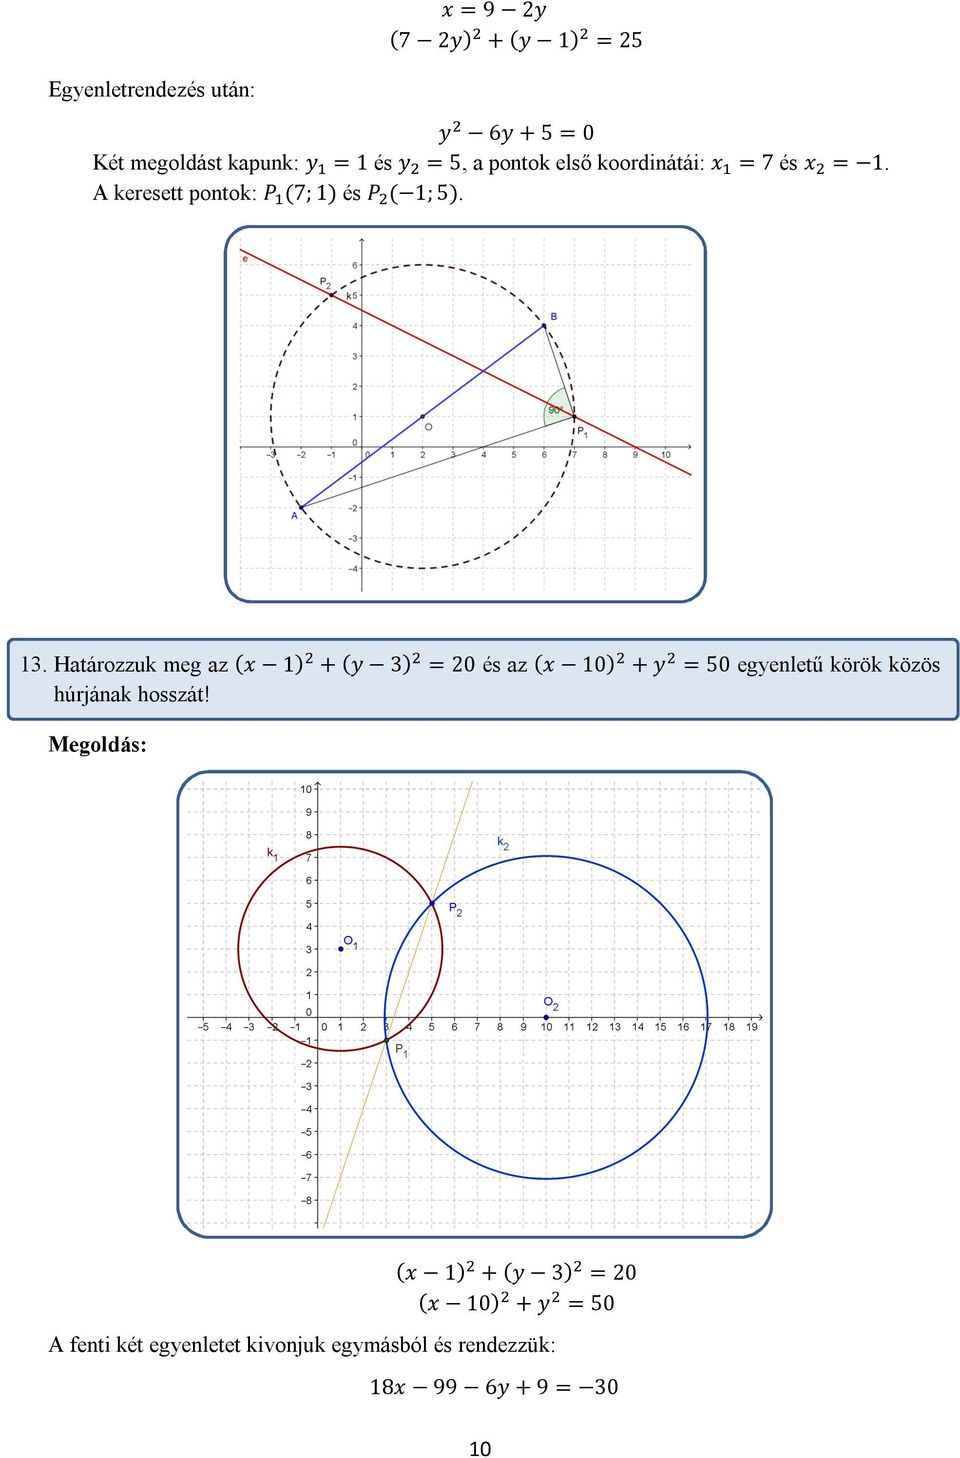 Határozzuk meg az (x 1) + (y 3) = 20 és az (x 10) + y = 50 egyenletű körök közös húrjának hosszát!